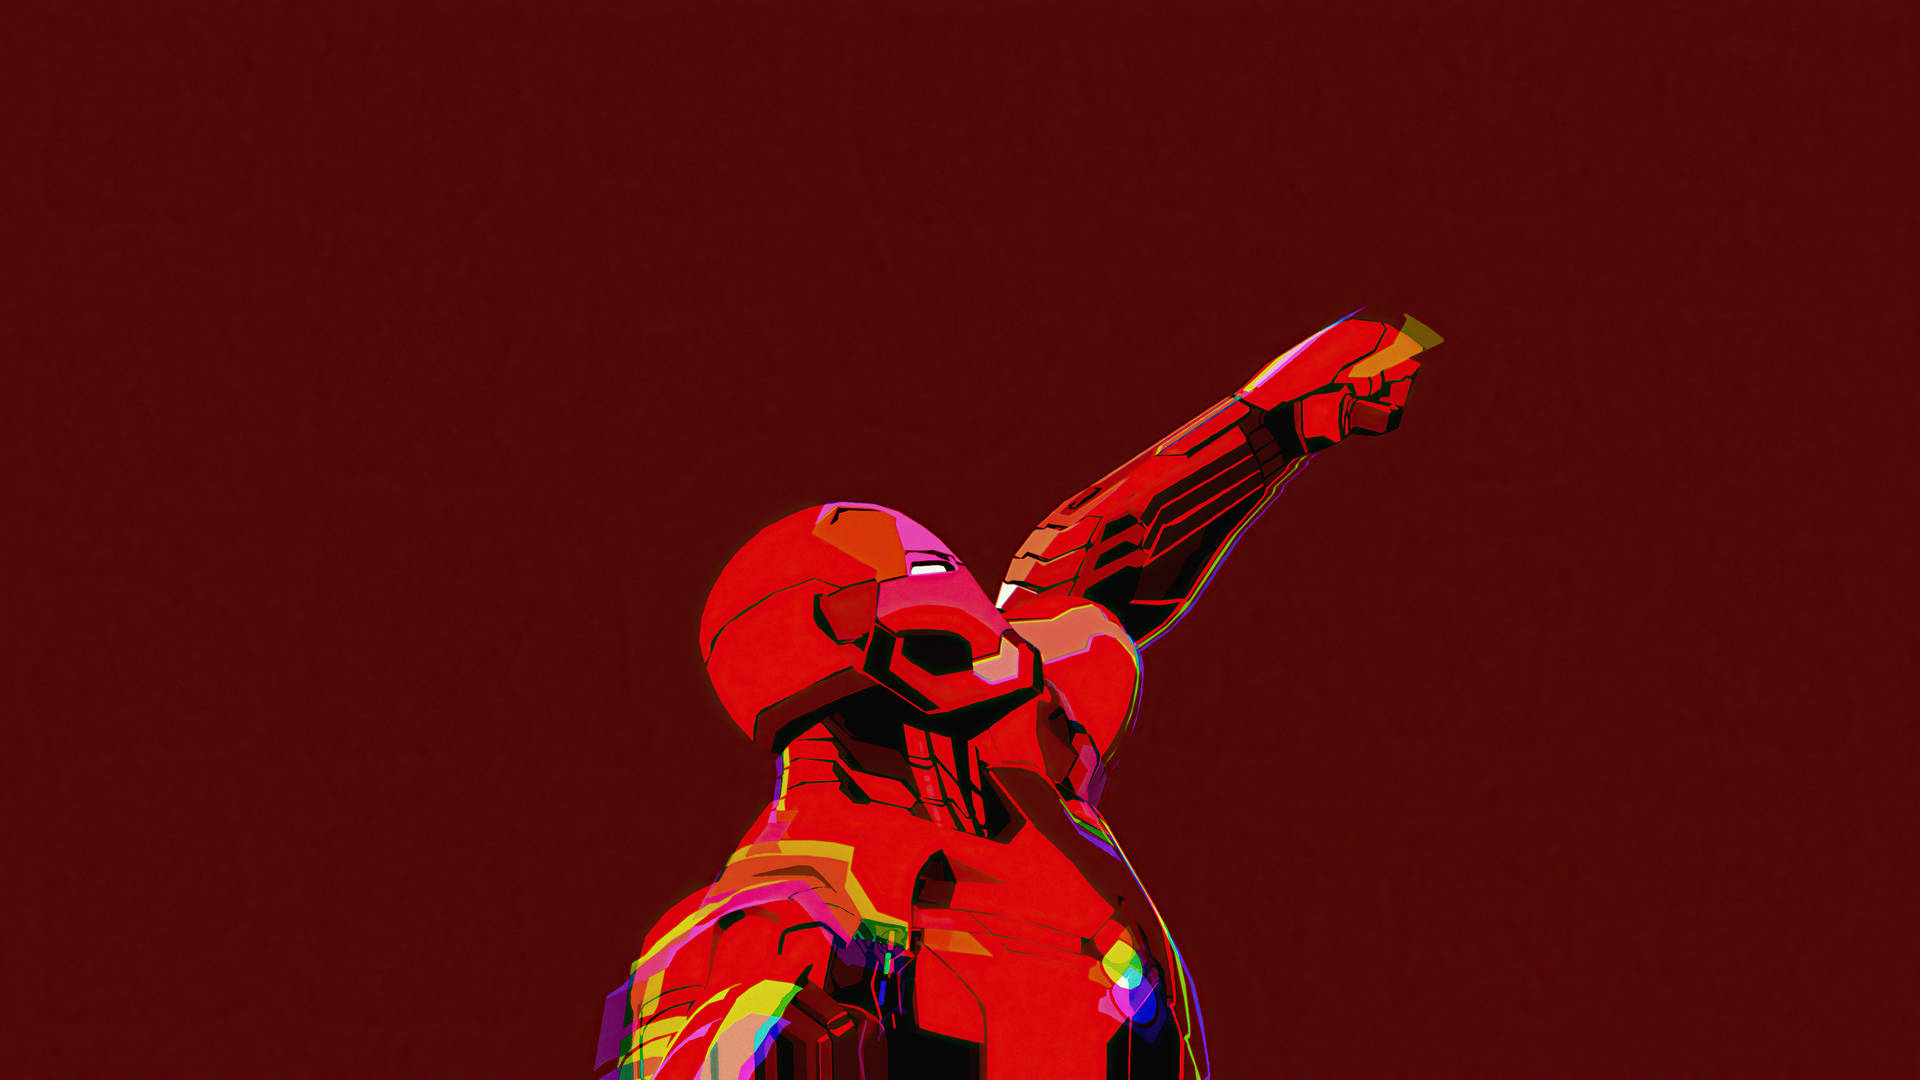 1920x1080 Hd Iron Man Digital Art Wallpaper